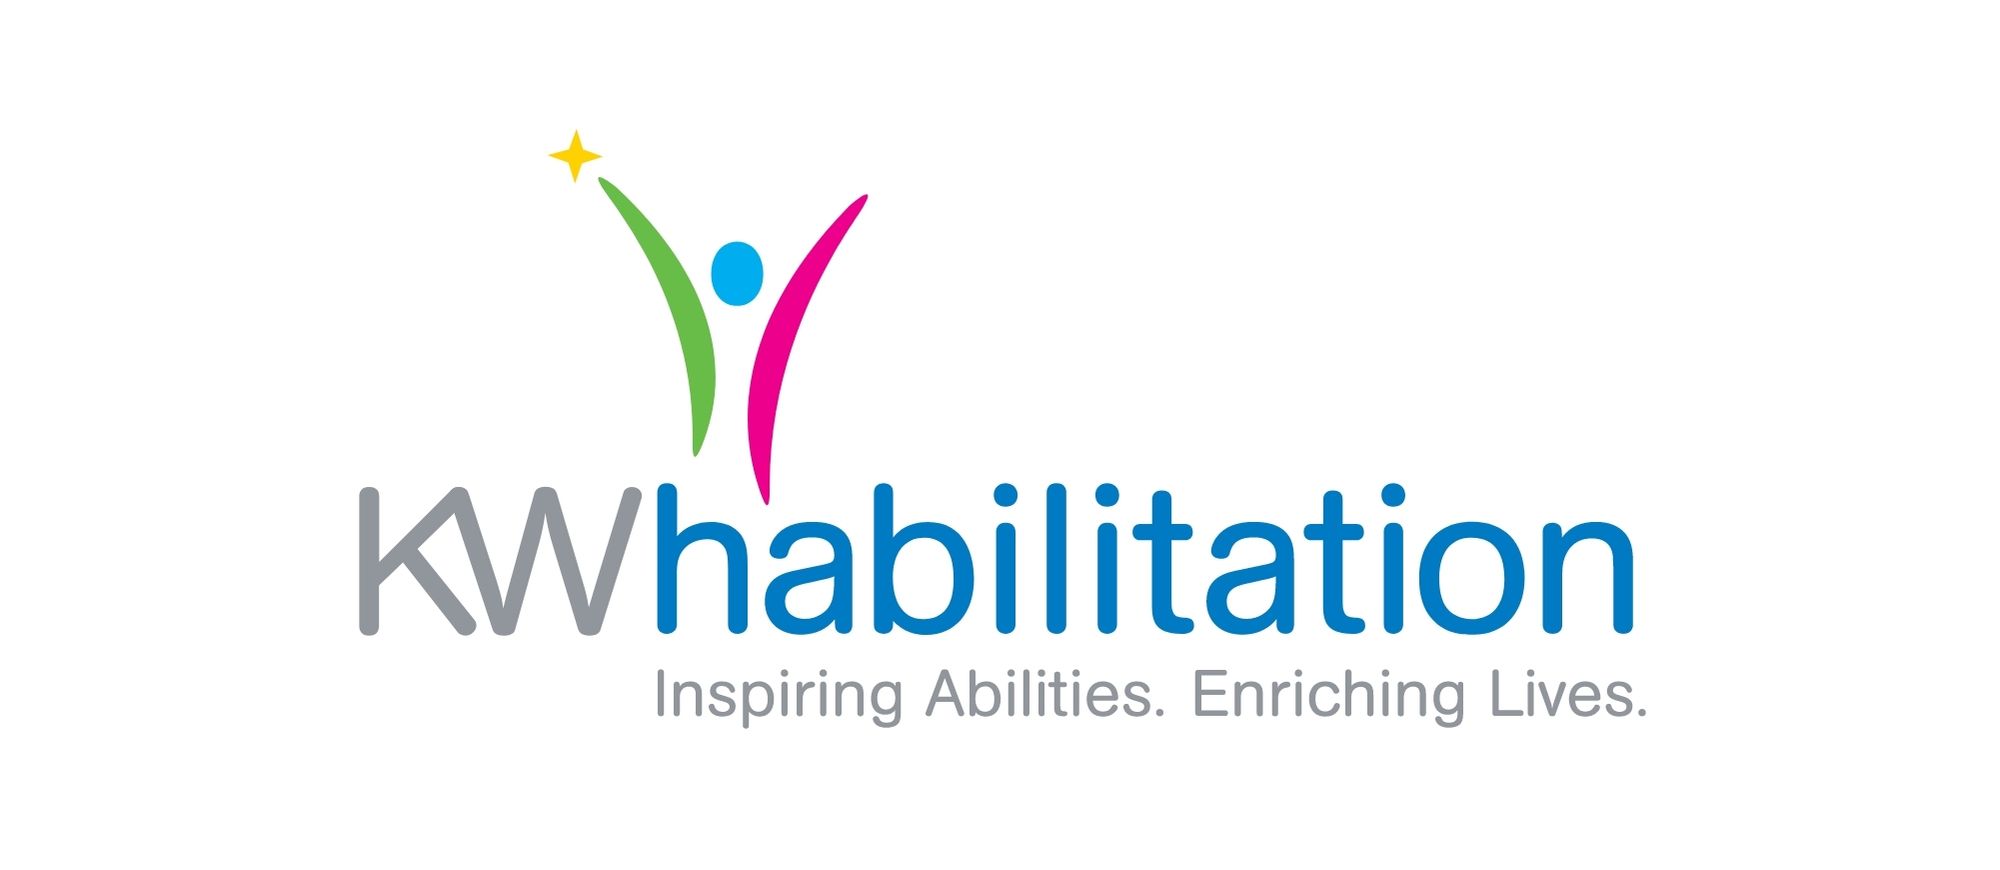 kw habilitation logo